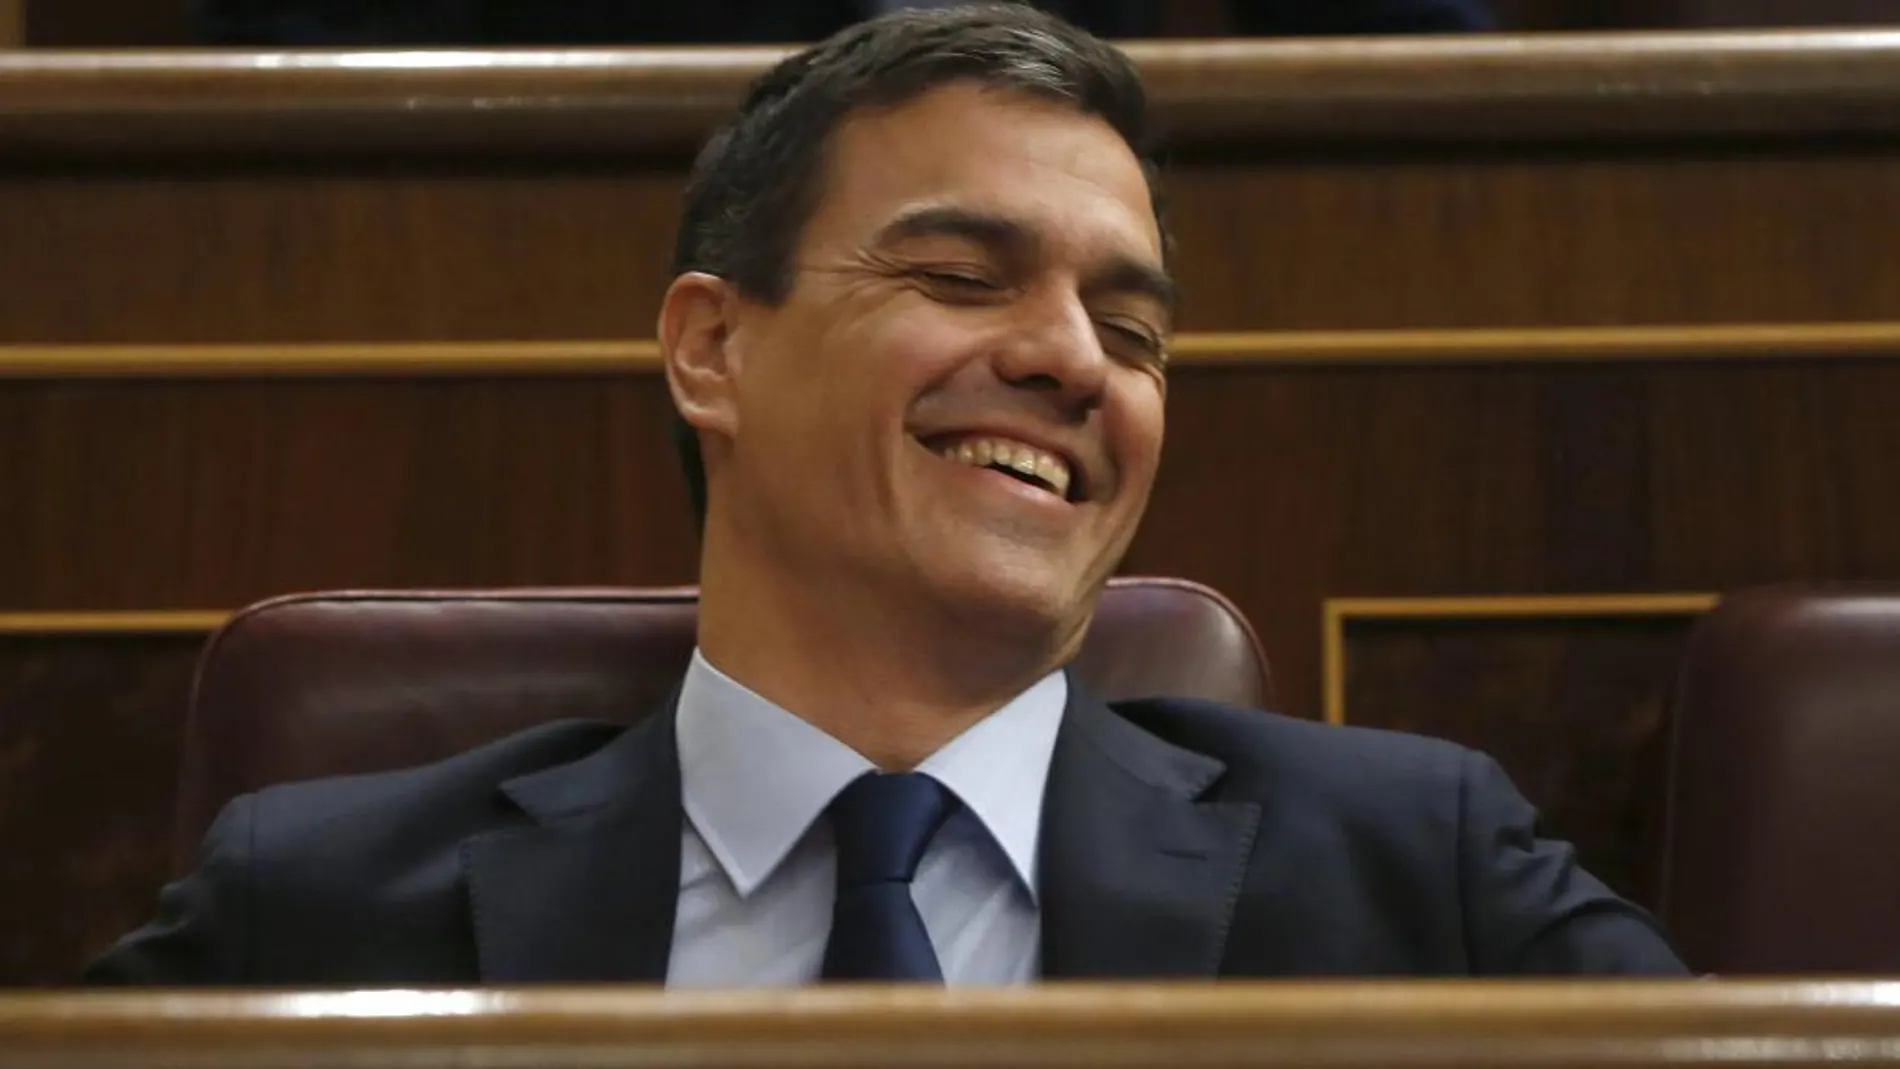 El secretario general del PSOE, Pedro Sánchez, en su escaño en el Congreso